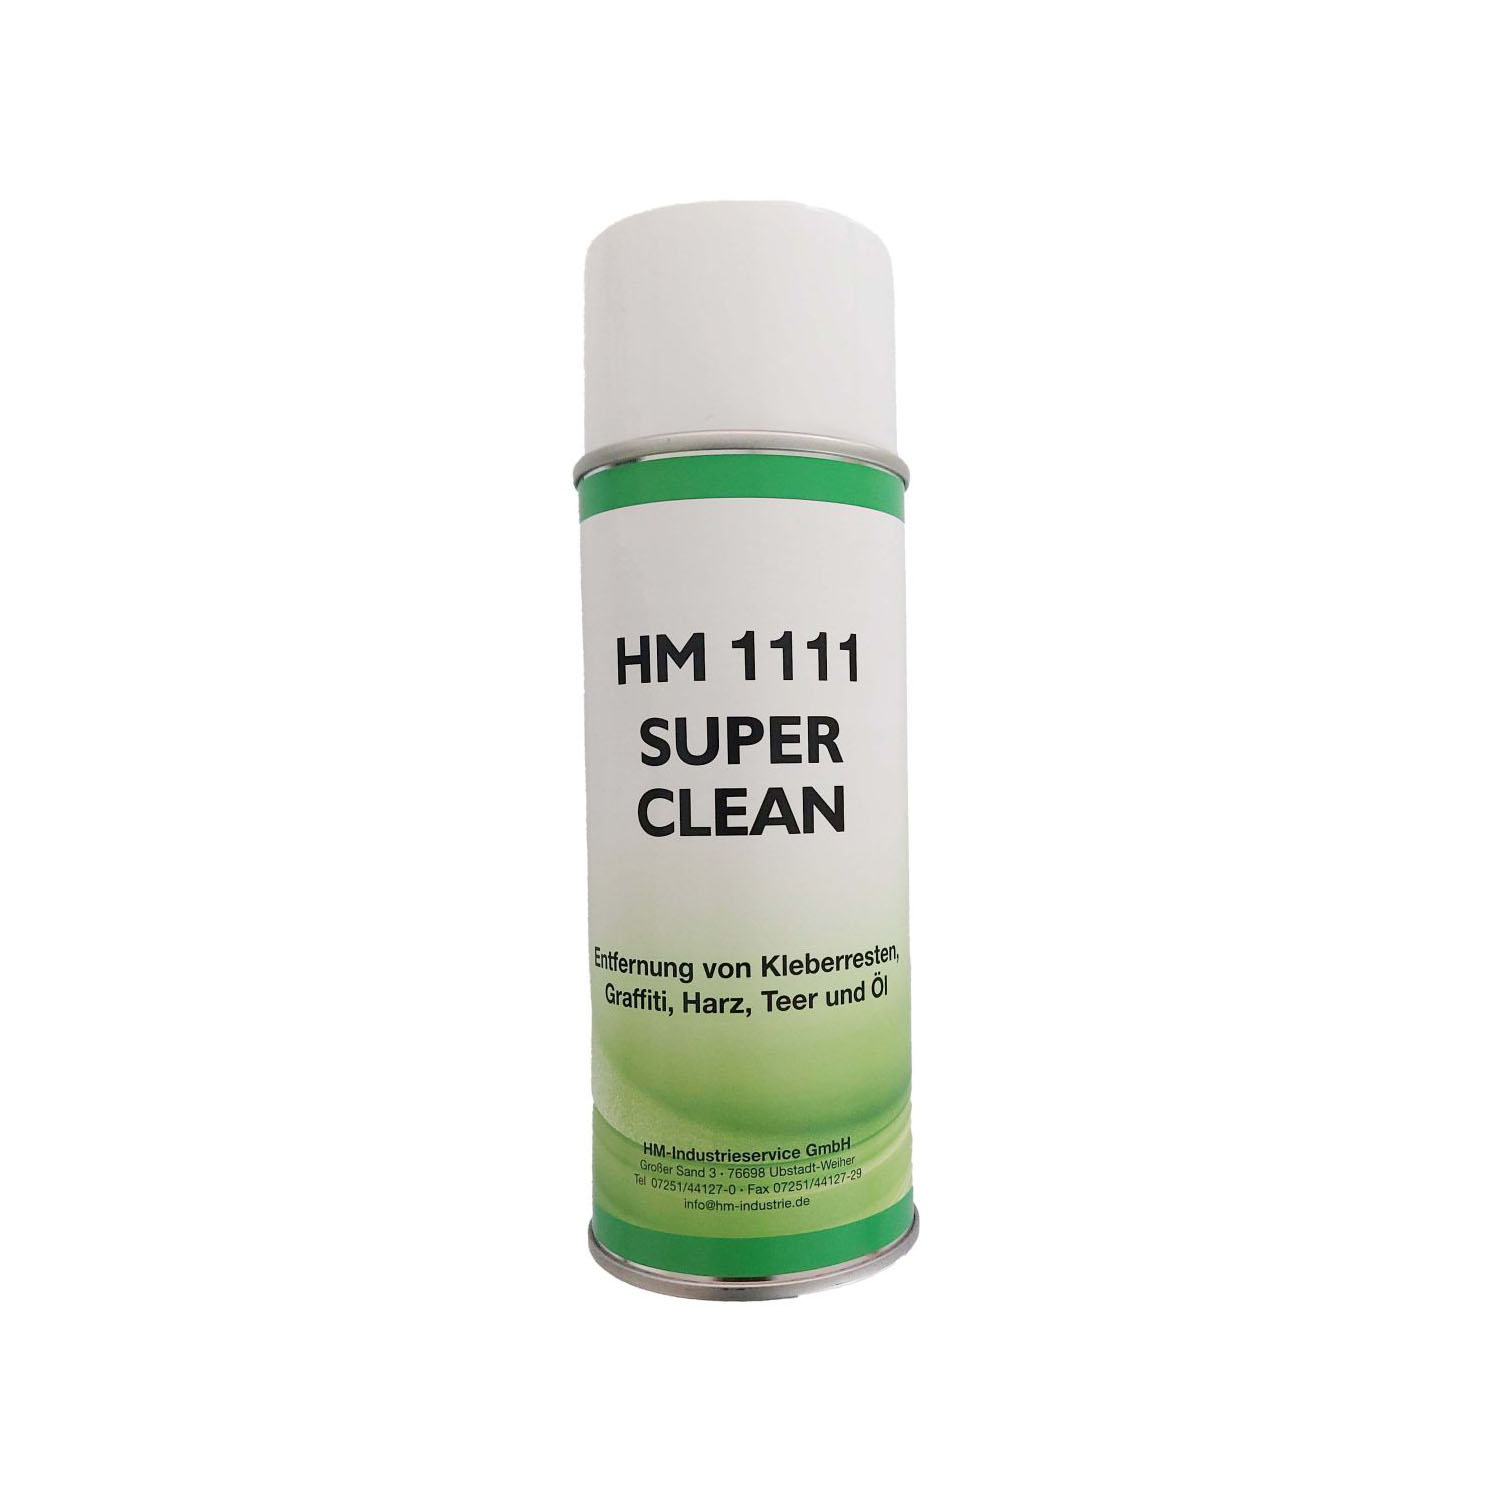 HM 1111 Superclean